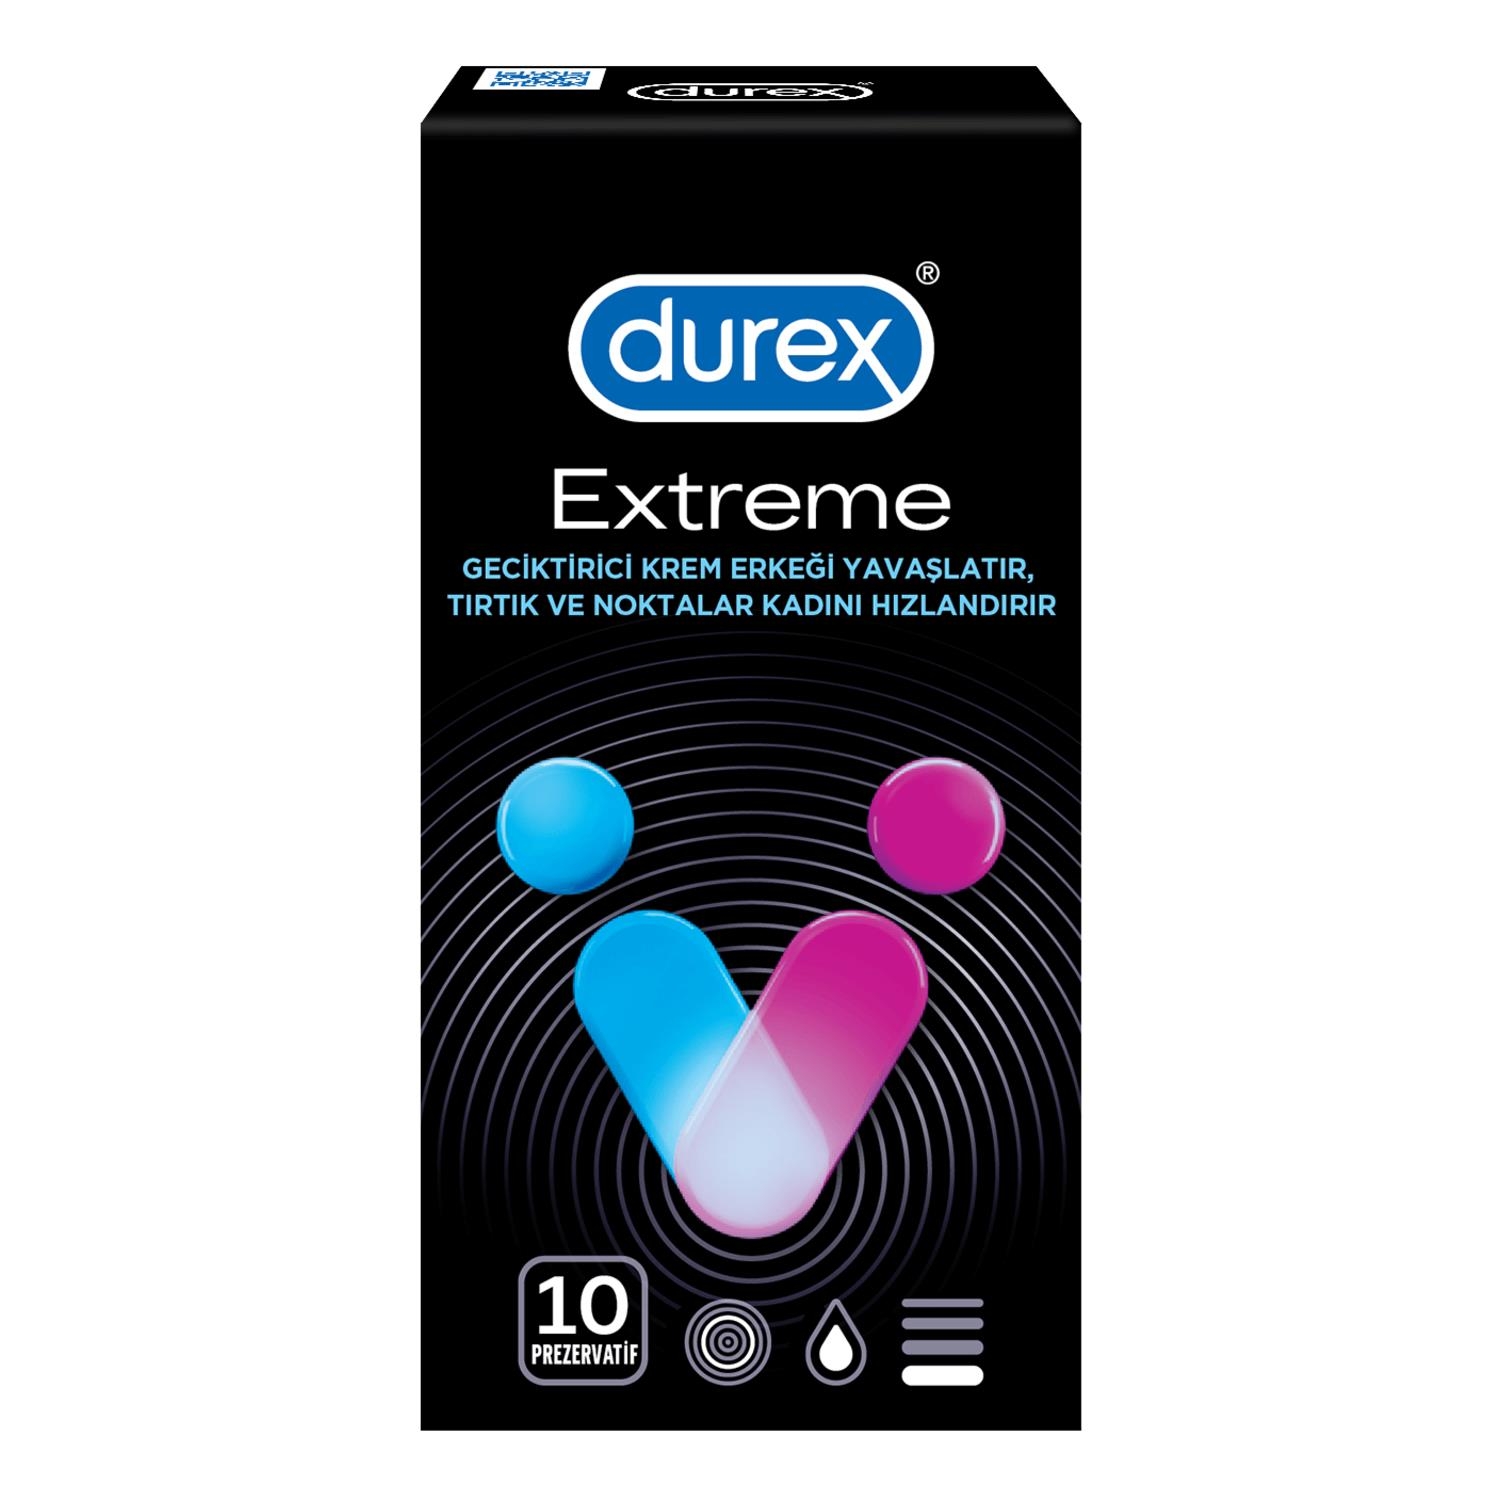 Durex Extreme 10lu Prezervatif - 1